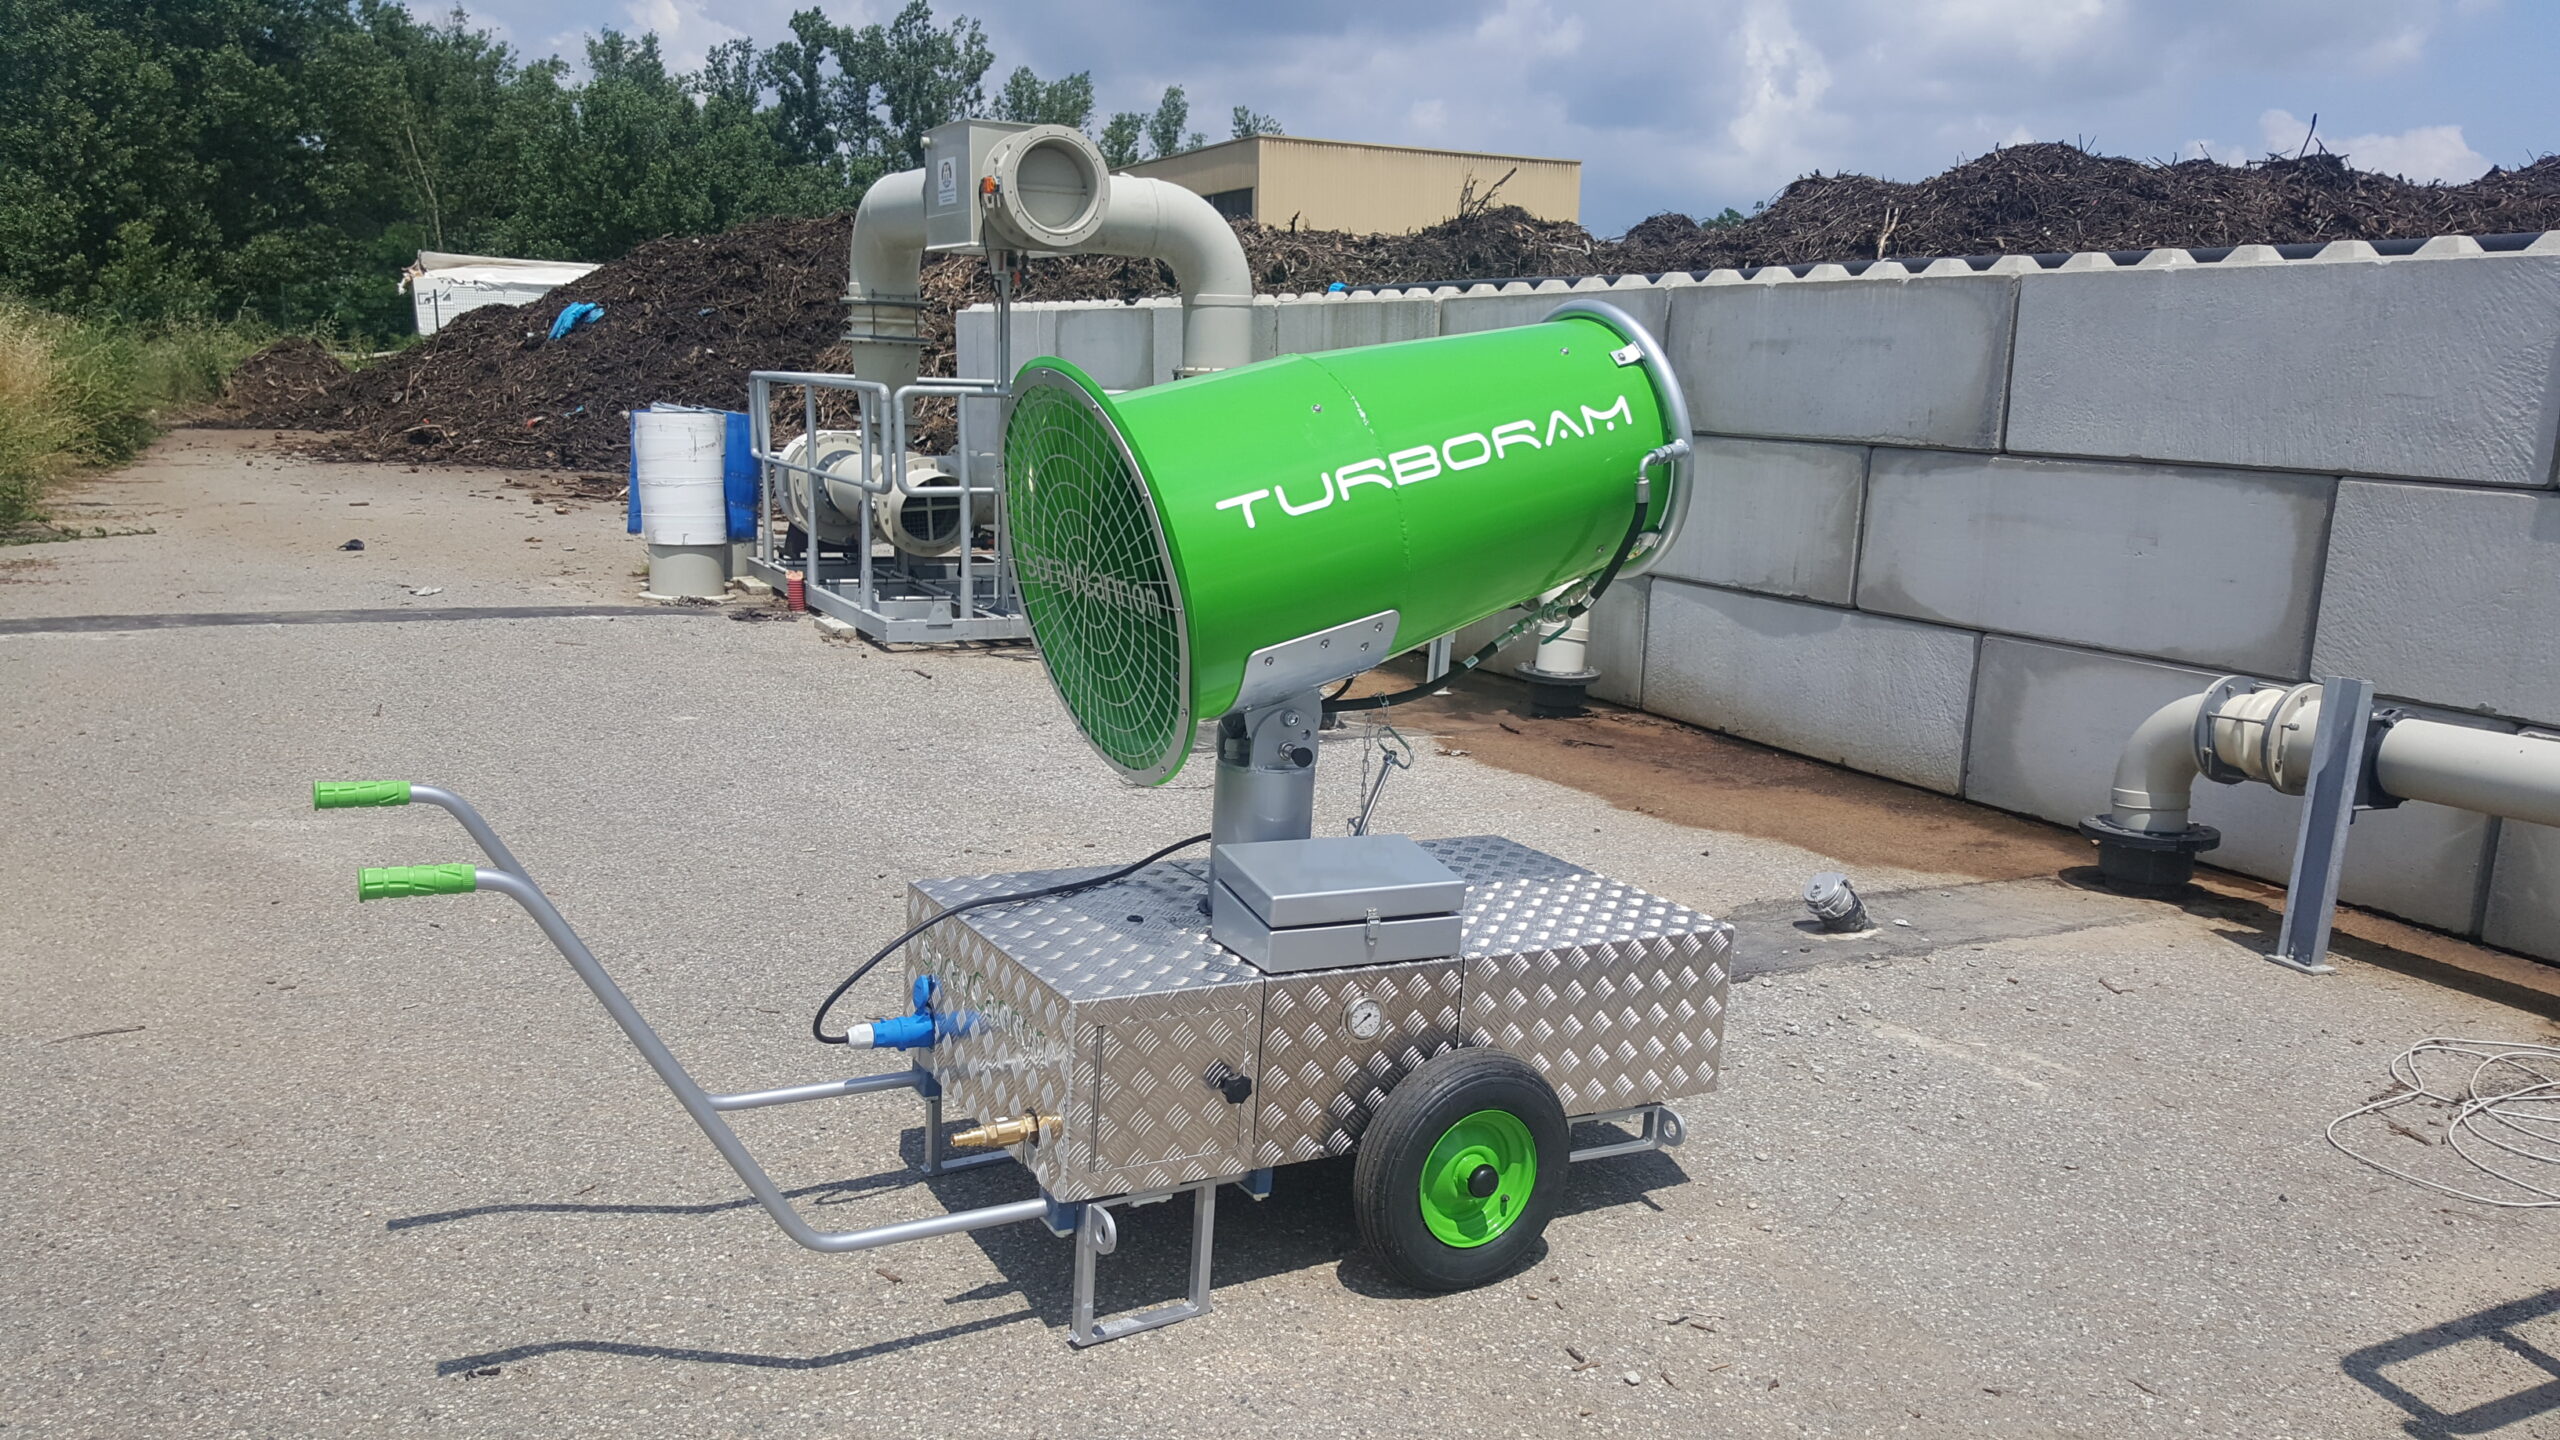 Le TURBORAM TRD35 est un brumisateur de moyenne portée principalement destiné aux travaux de démolition, de dépollution, du BTP, et aux activités de recyclage. Mobile